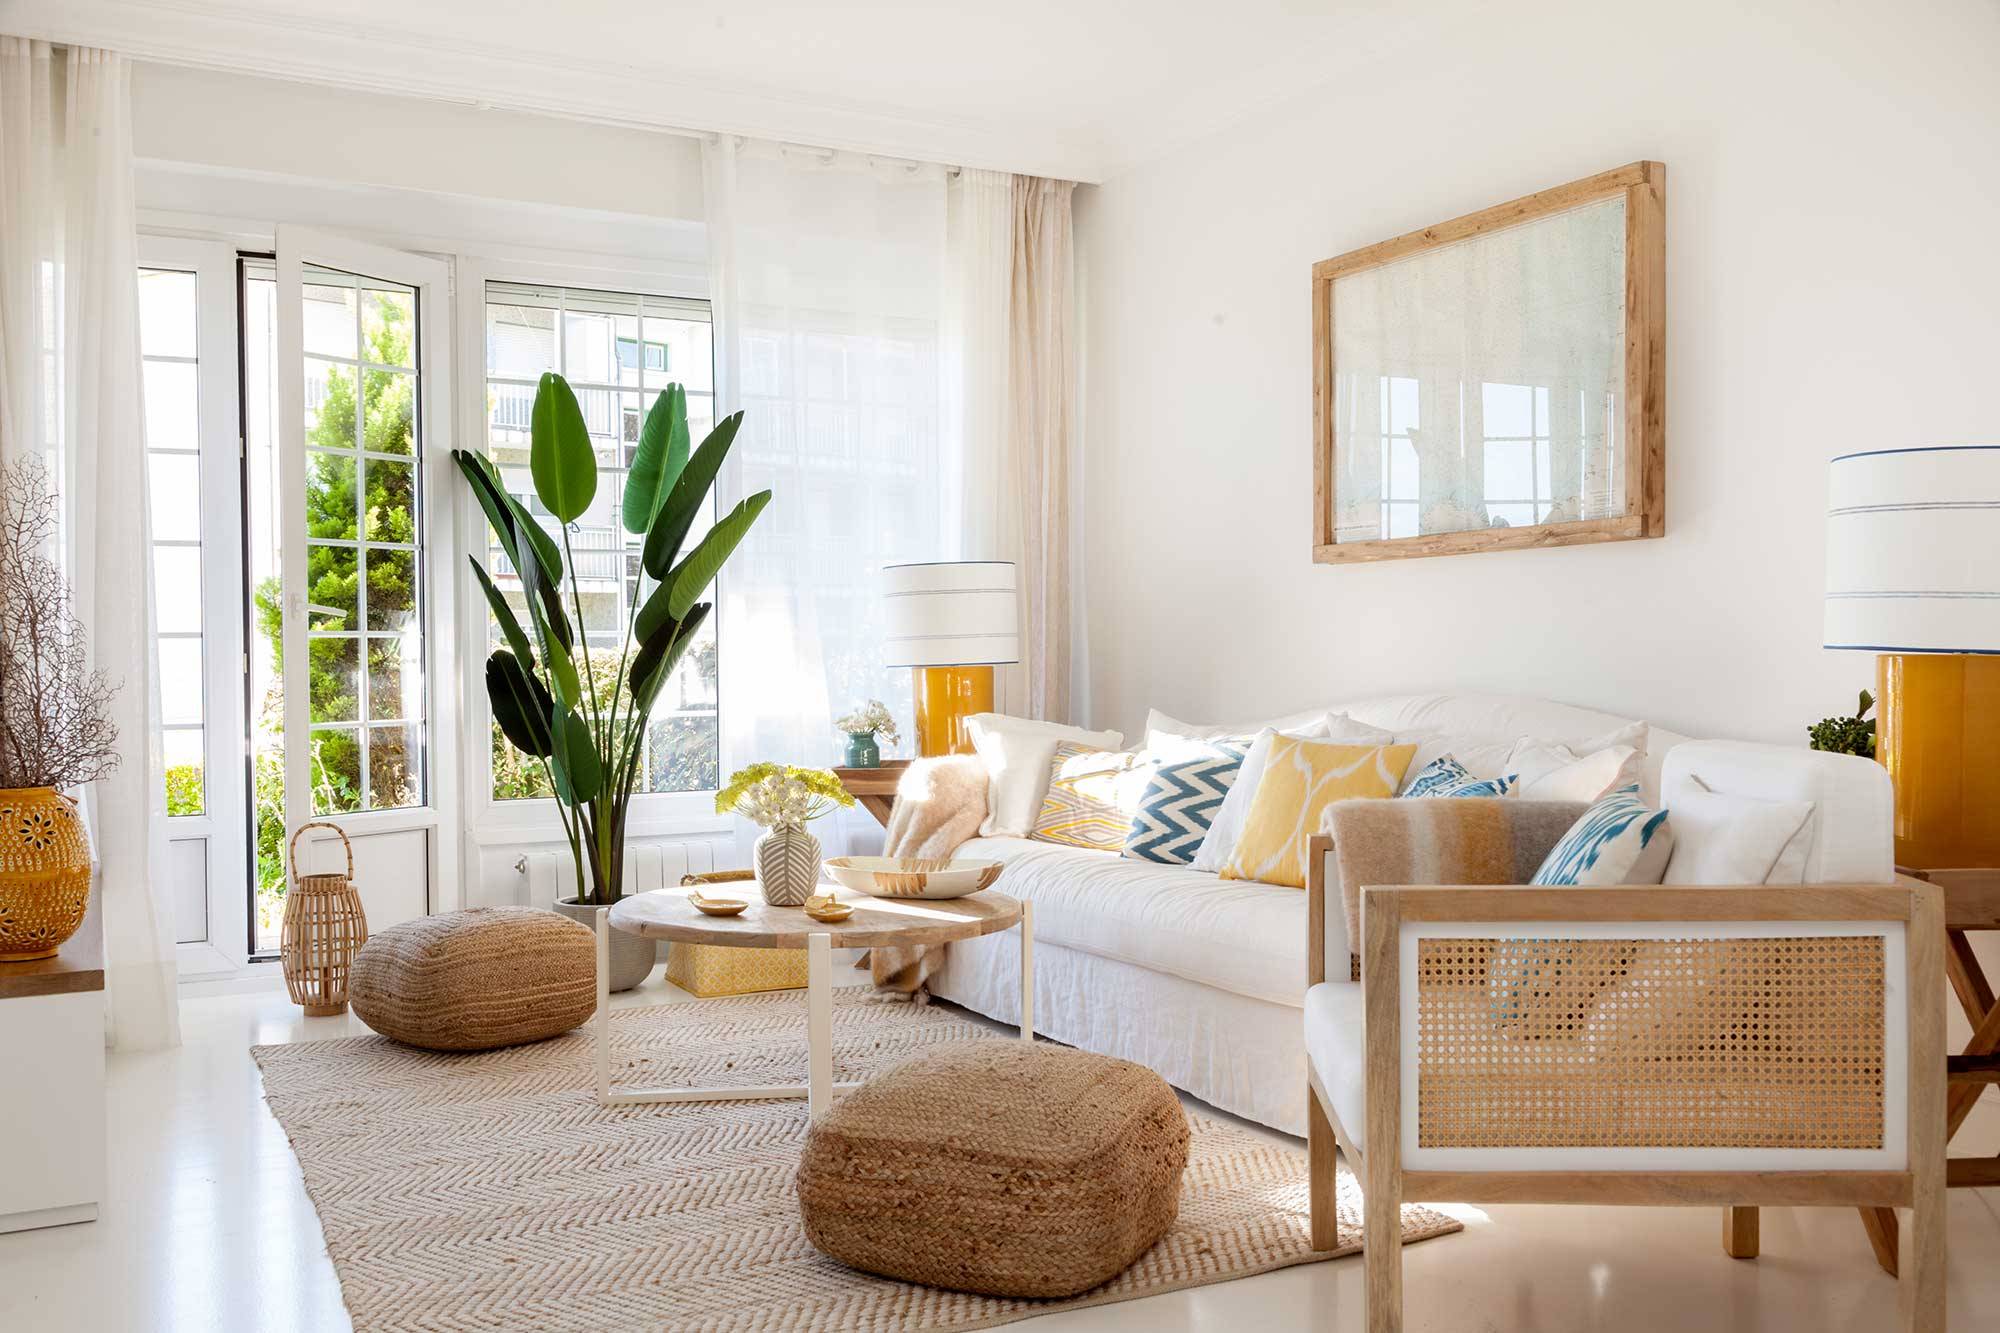 Salón con sofá de lino blanco, butaca de rejilla, pufs y alfombra de fibras naturales MG 0099